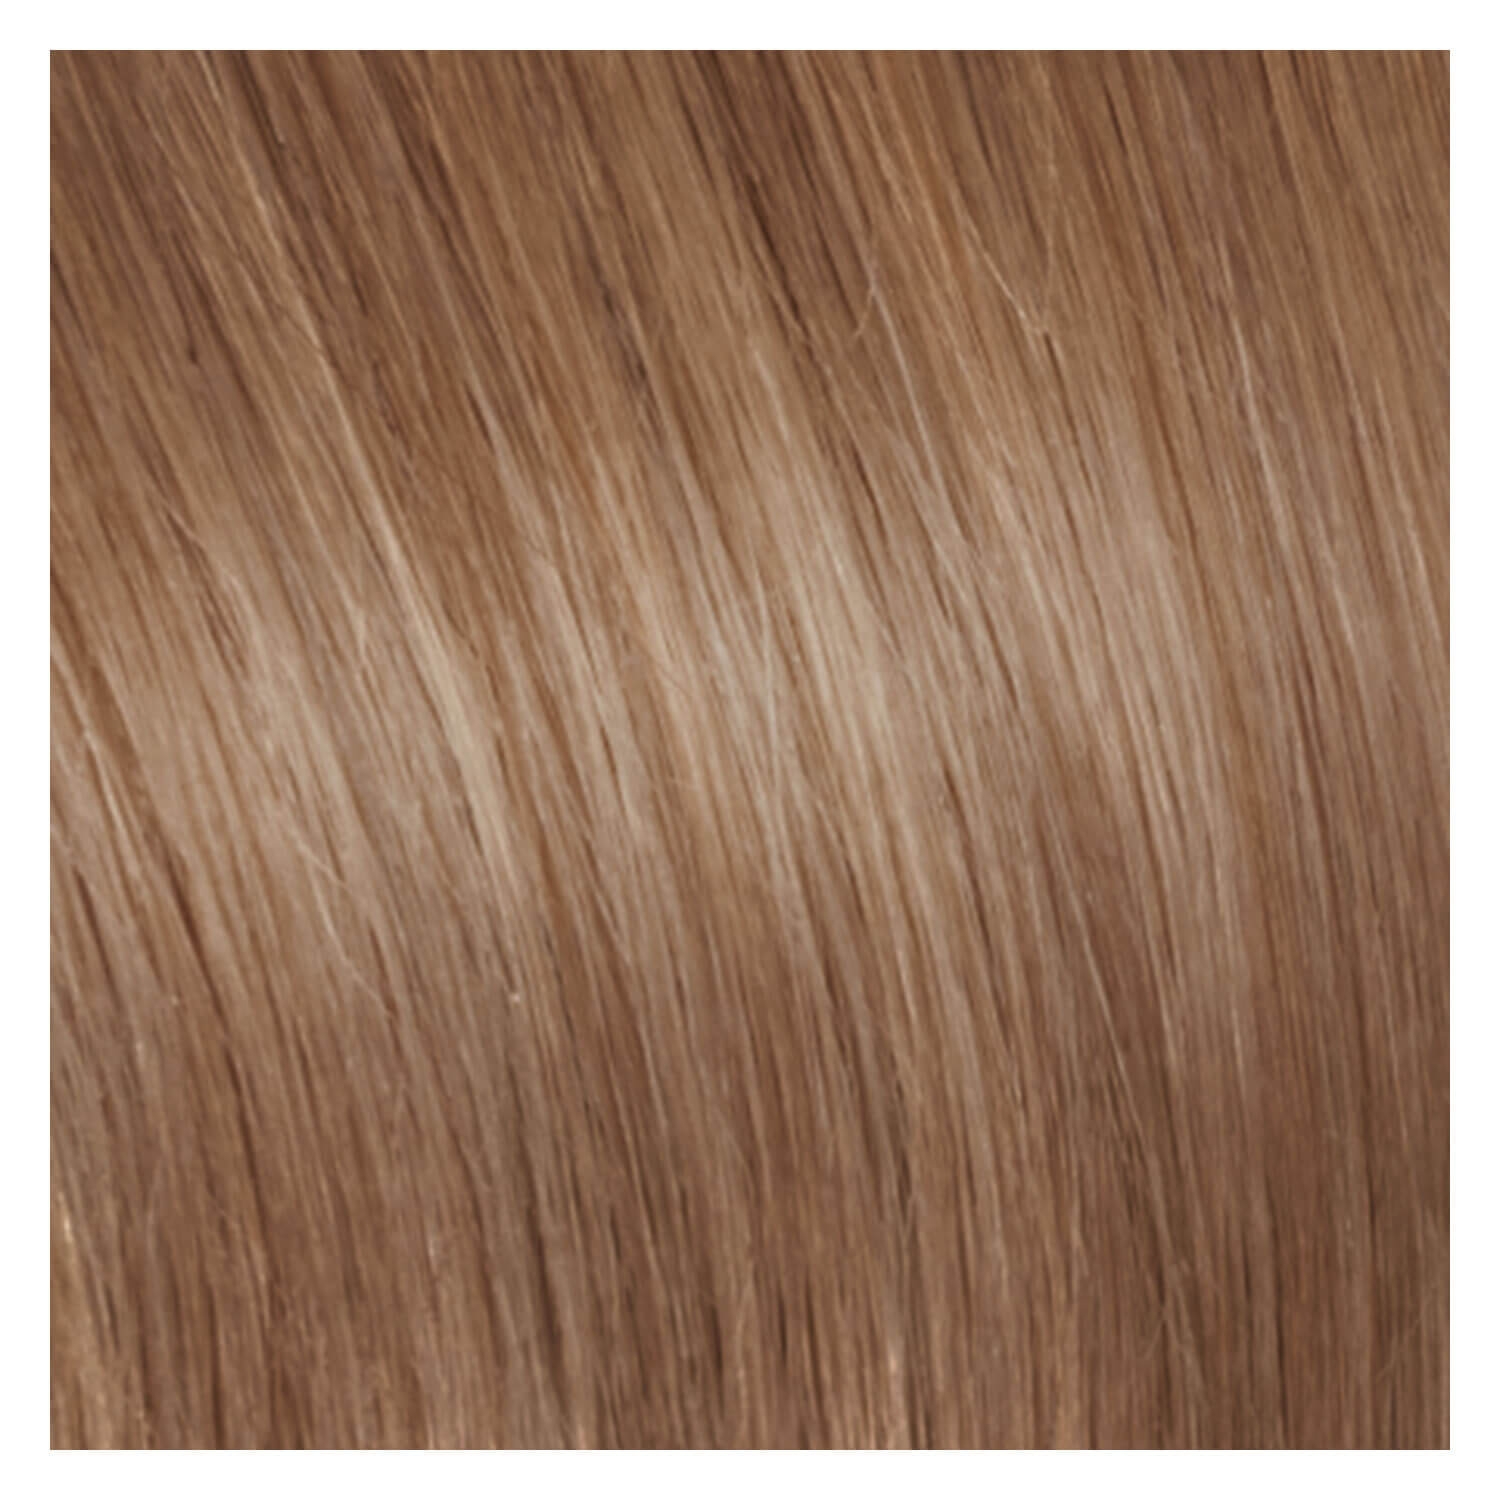 Produktbild von SHE Bonding-System Hair Extensions Straight - 16 Natürliches Blond Asch 55/60cm